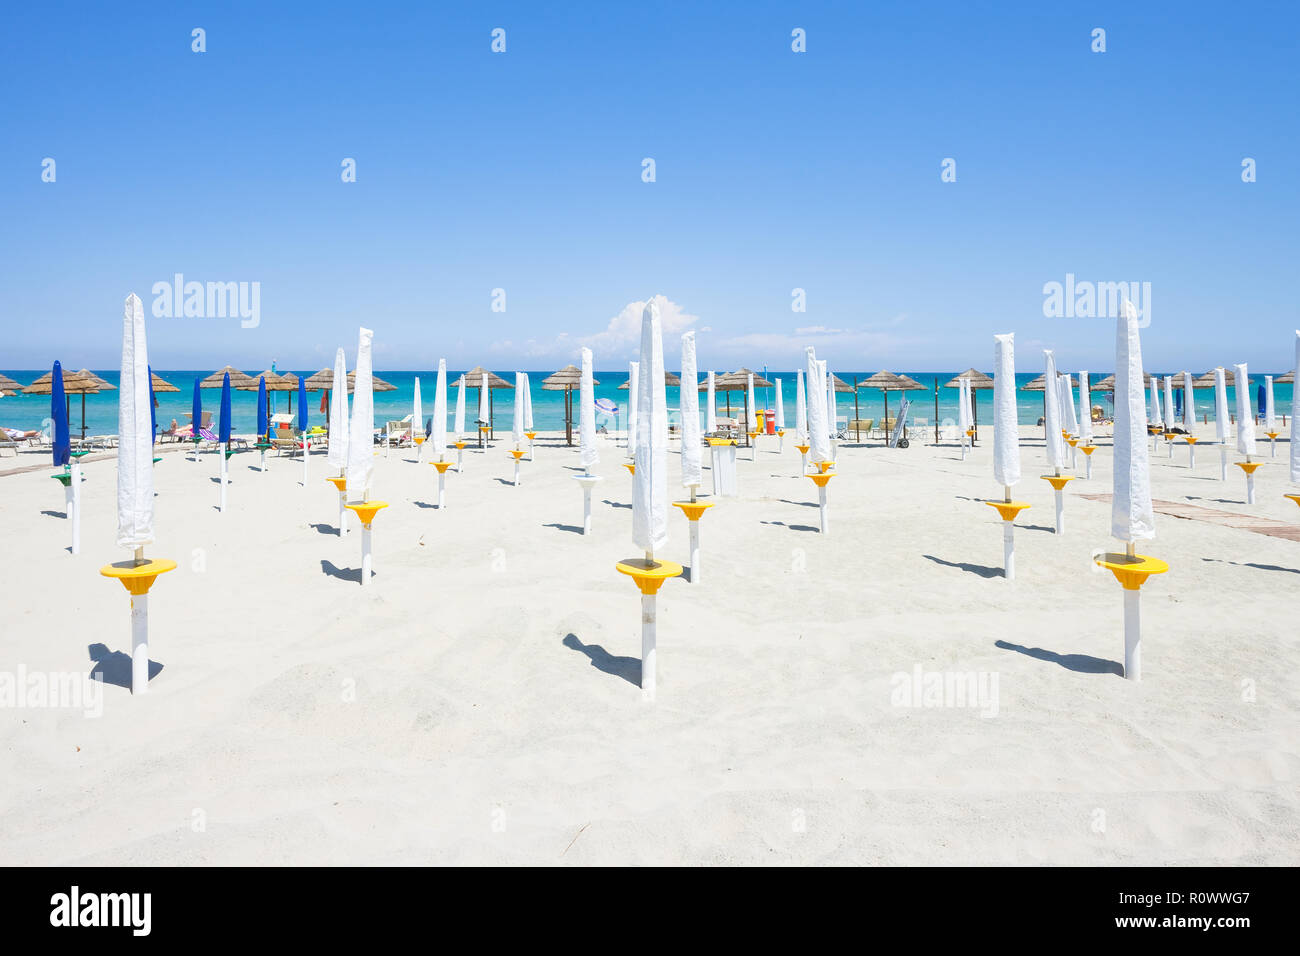 Alimini Grande, Apulien, Italien - gefaltet Sonnenschirme am schönen Strand von Alimini Grande Stockfoto